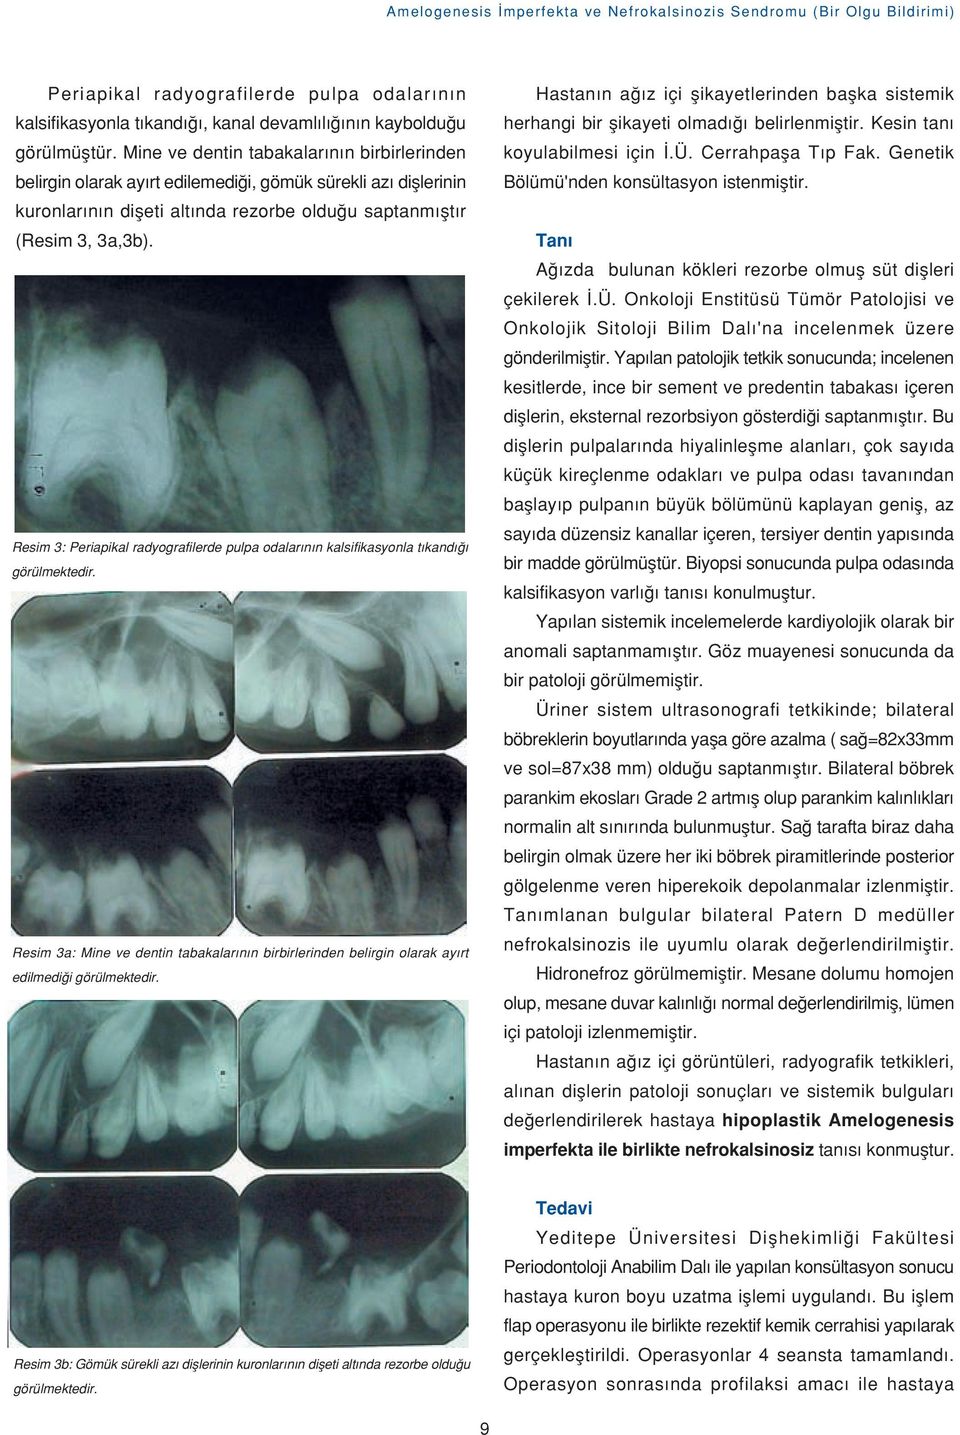 Resim 3: Periapikal radyografilerde pulpa odalar n n kalsifikasyonla t kand görülmektedir. Resim 3a: Mine ve dentin tabakalar n n birbirlerinden belirgin olarak ay rt edilmedi i görülmektedir.